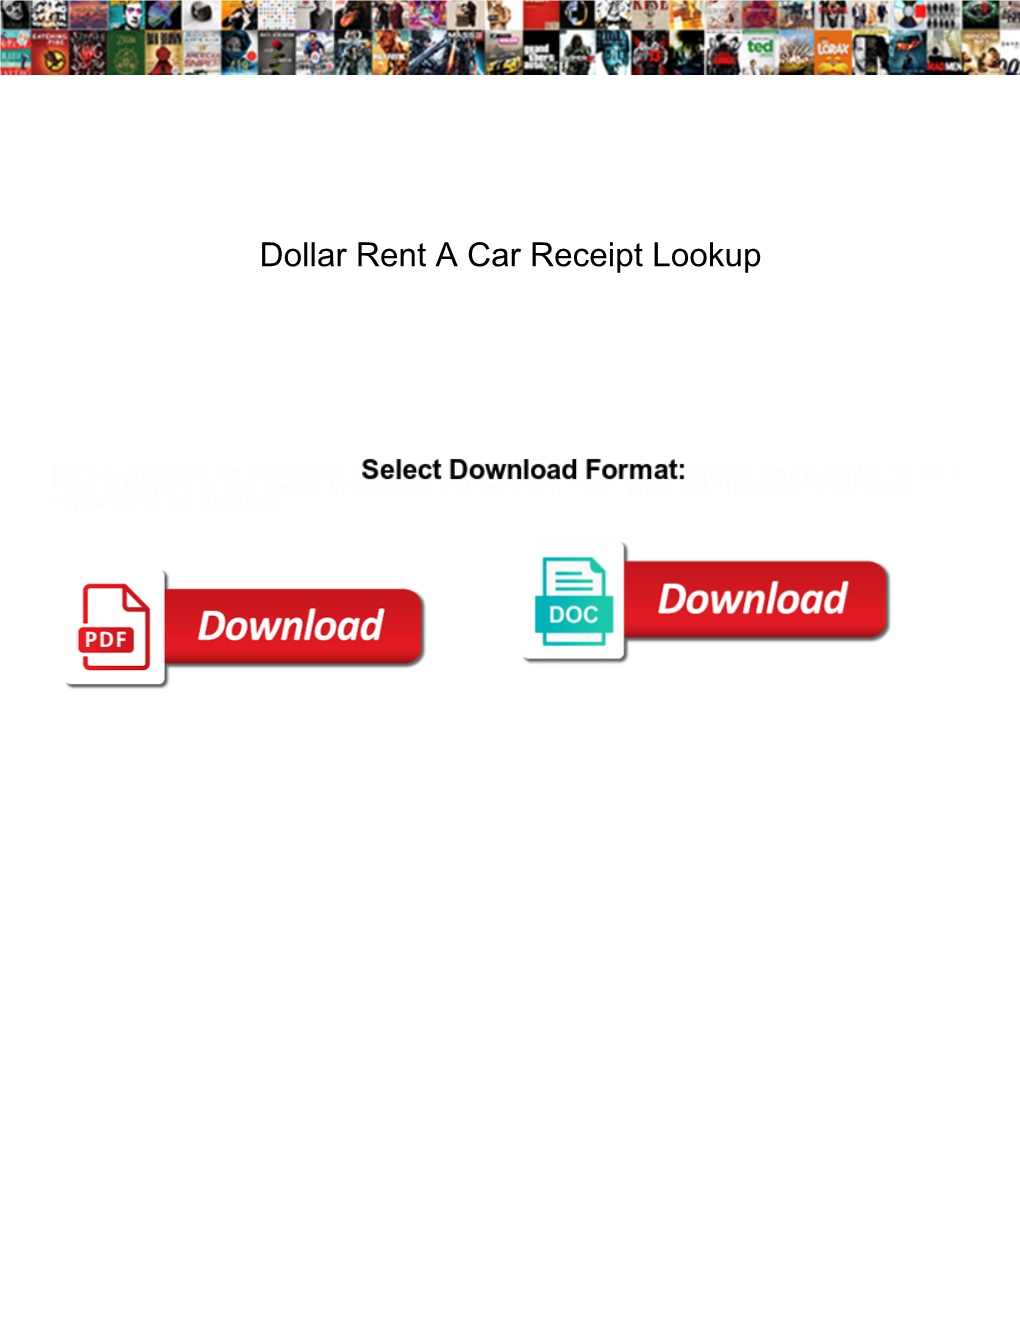 Dollar Rent a Car Receipt Lookup